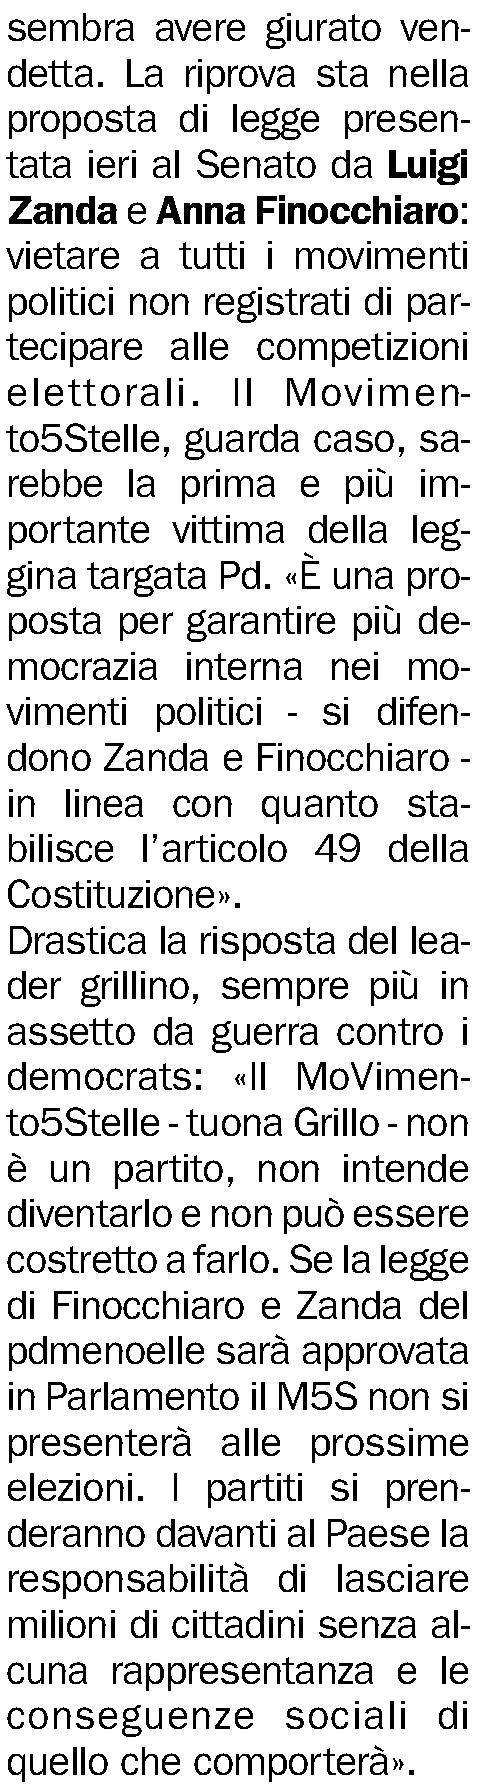 Quotidiano Milano Diffusione: n.d. Lettori: n.